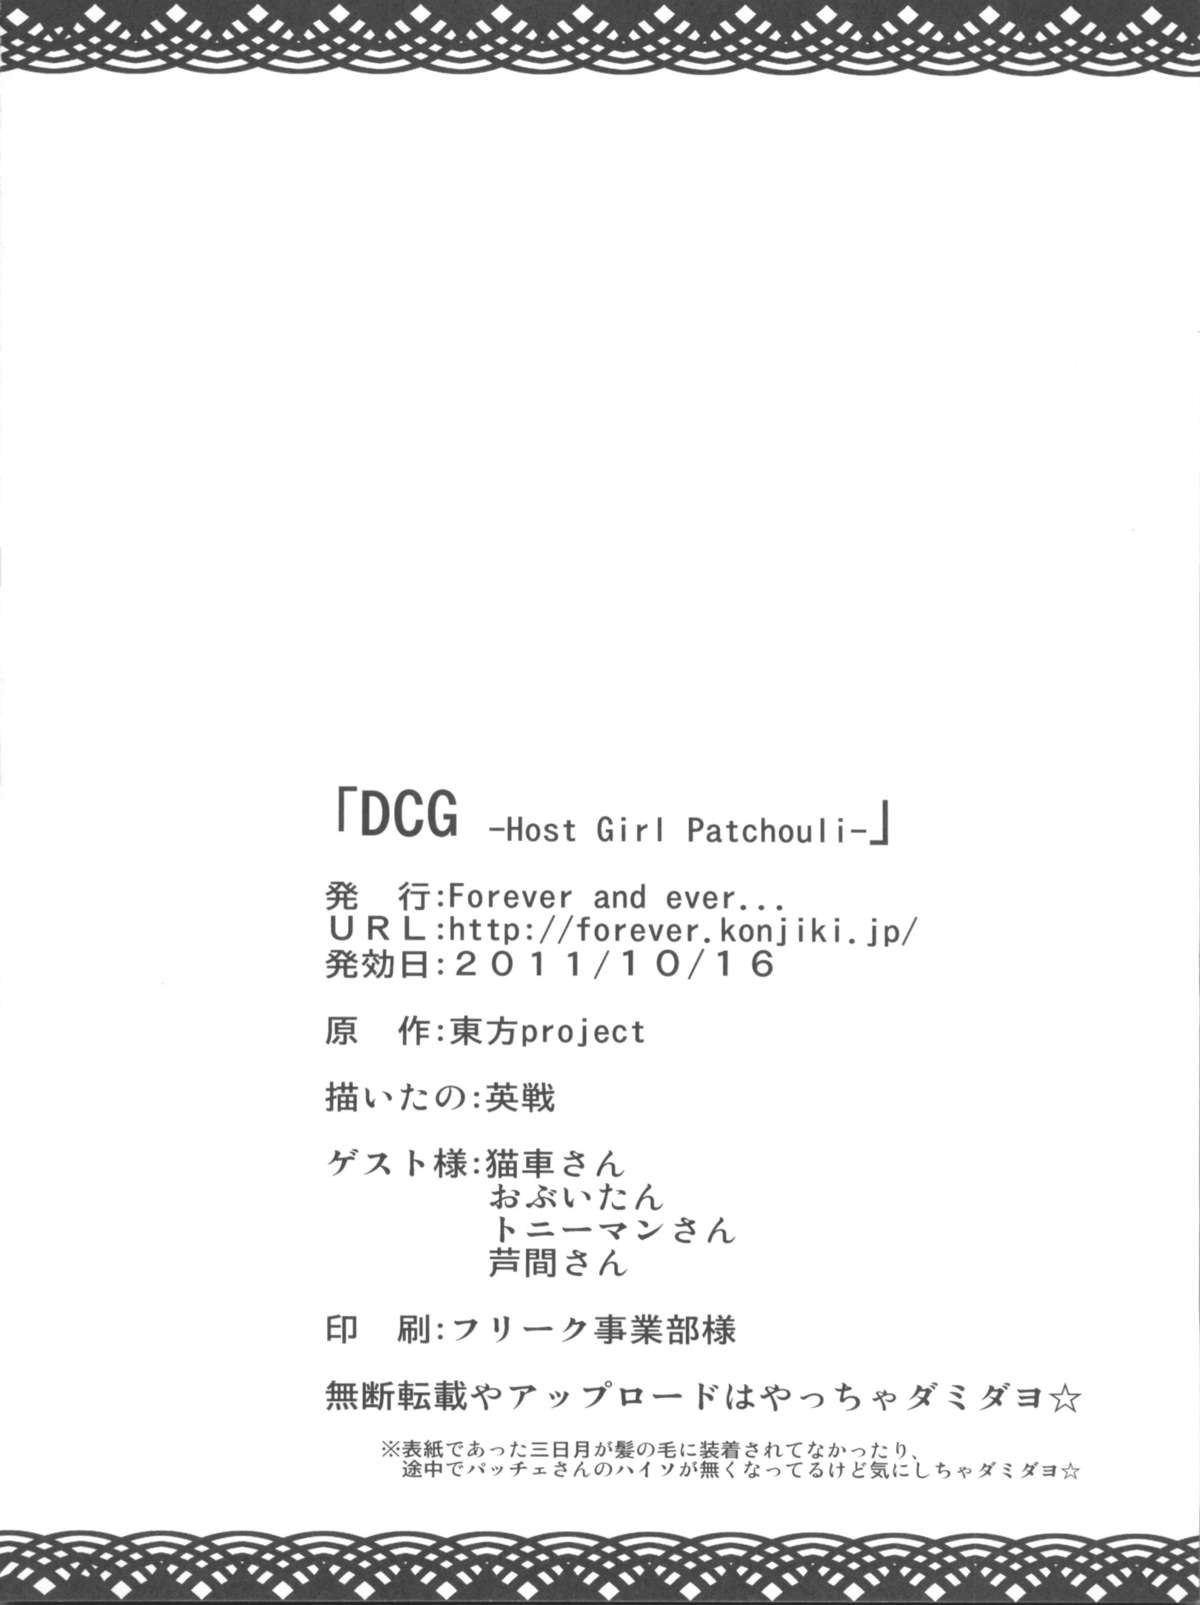 (紅楼夢7) [Forever and ever... (英戦)] DCG -Host Girl Patchouli-(東方 Project)